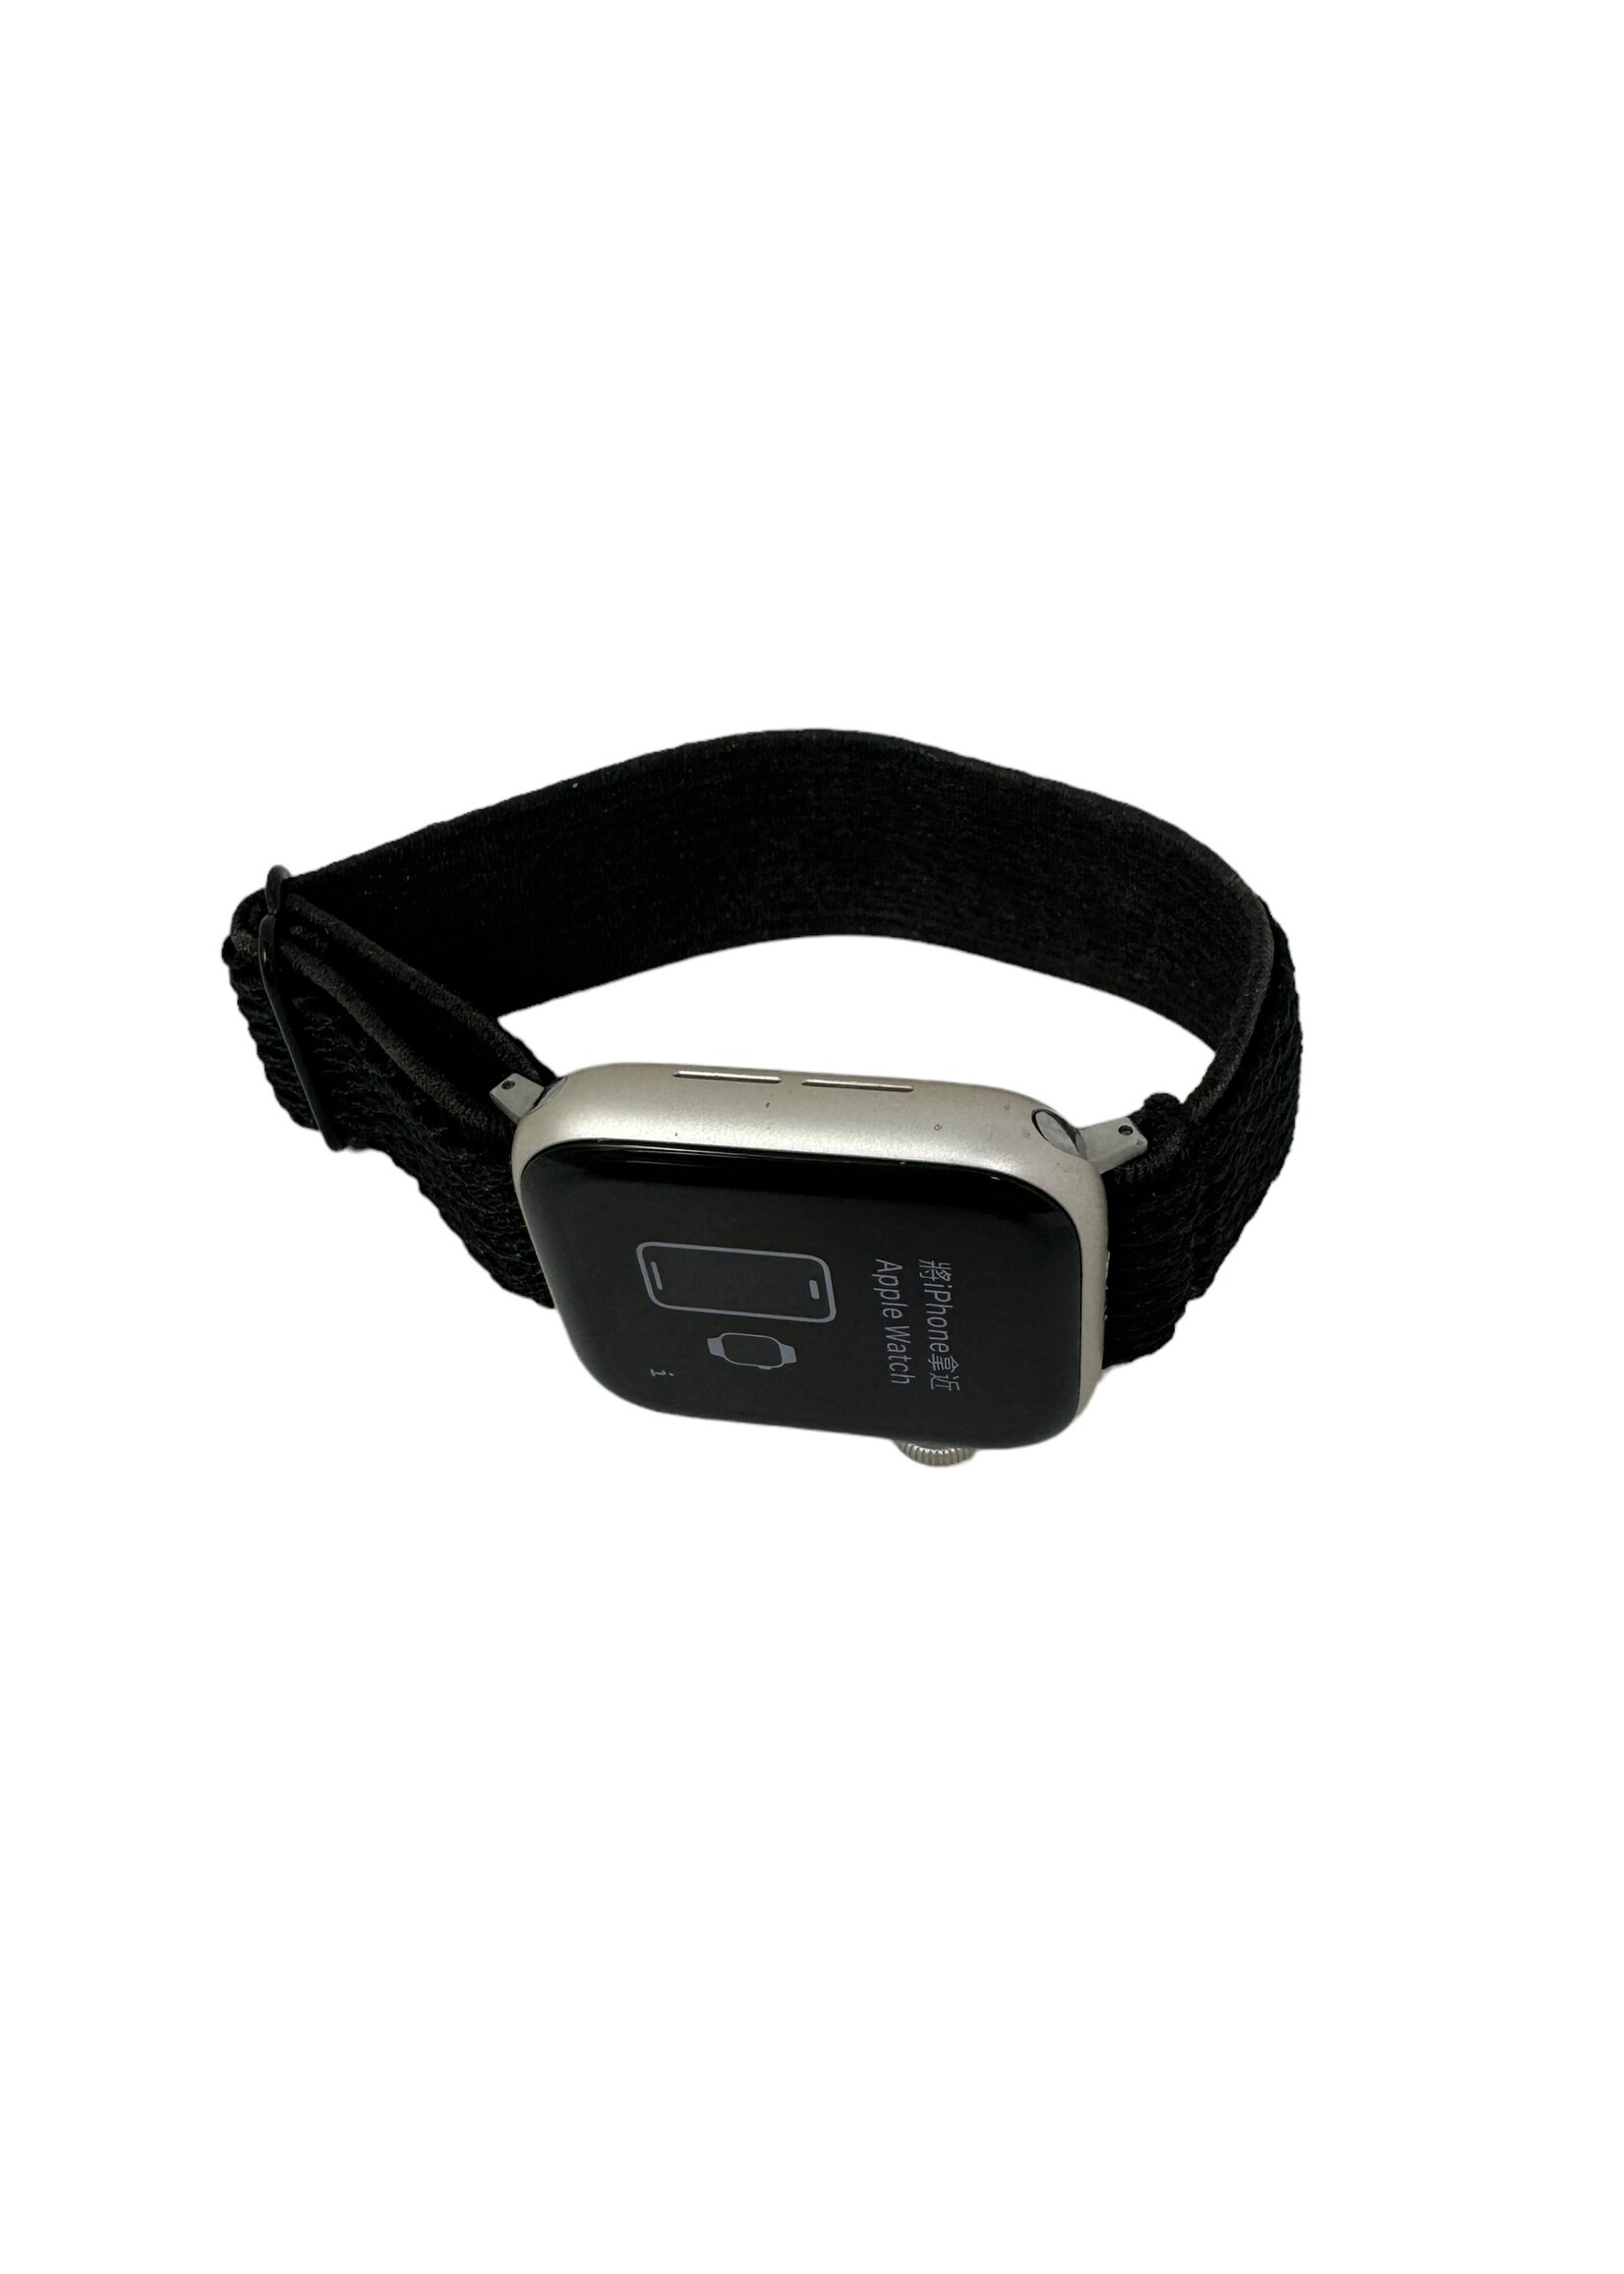 Apple USED Apple Watch SE 2nd Gen 40MM GPS Starlight